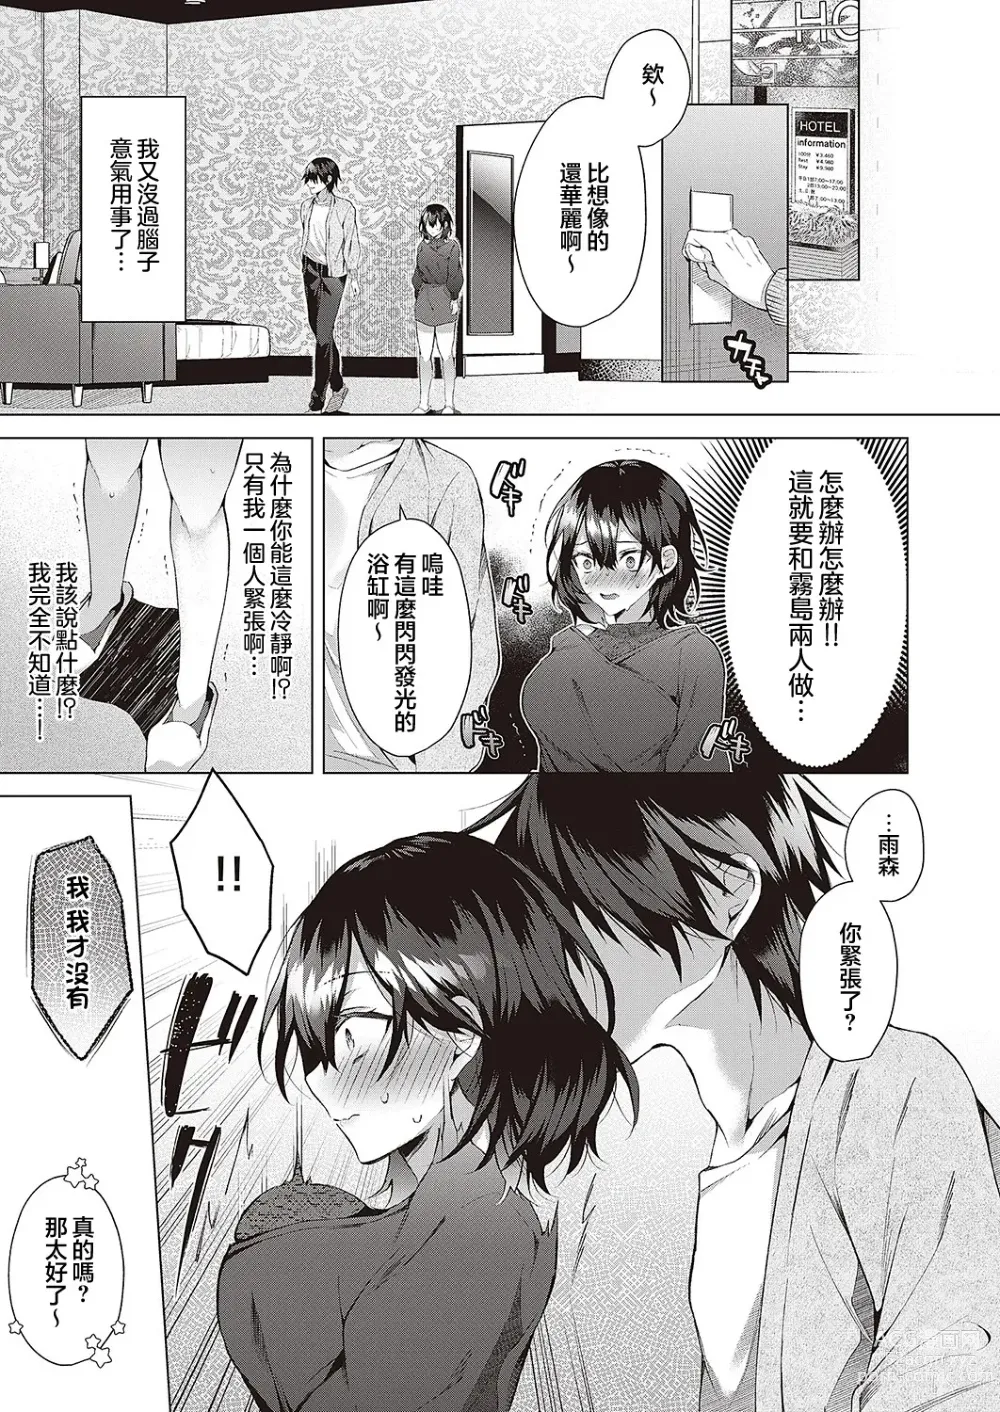 Page 9 of manga OUTOTSU Lovemotion!